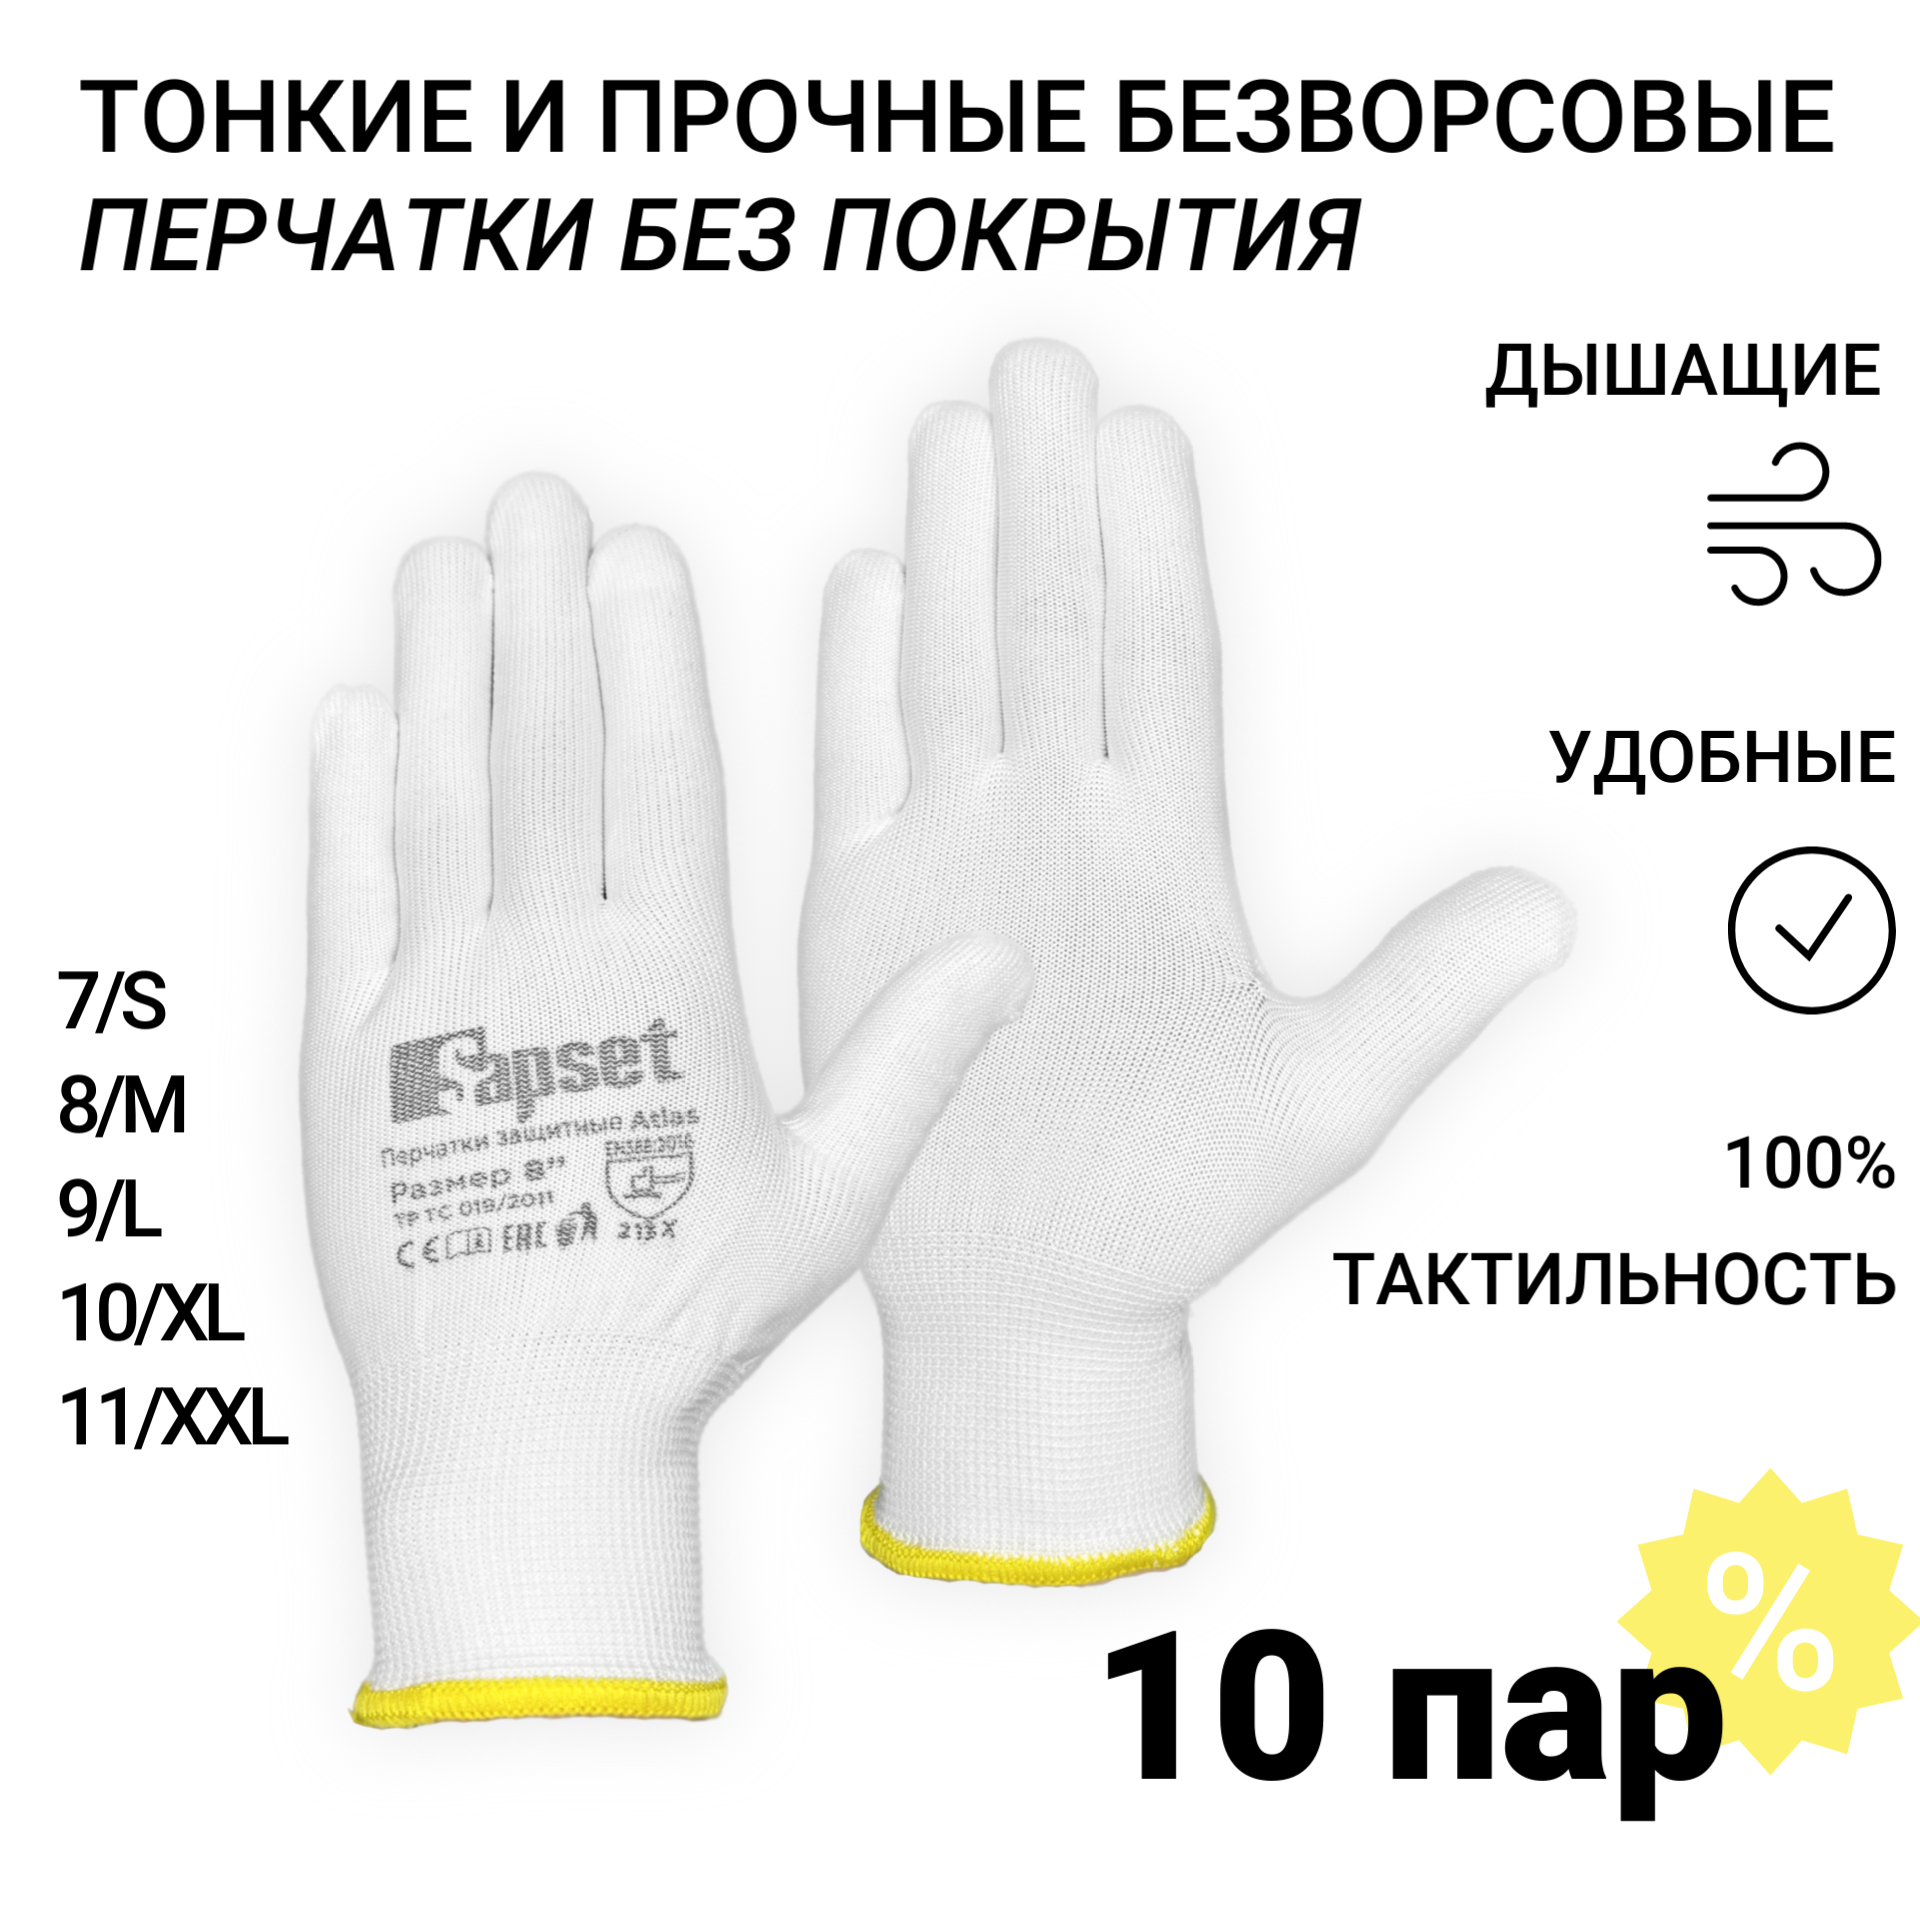 Перчатки рабочие без покрытия Sapset Atlas размер XL/10 - 10 пар